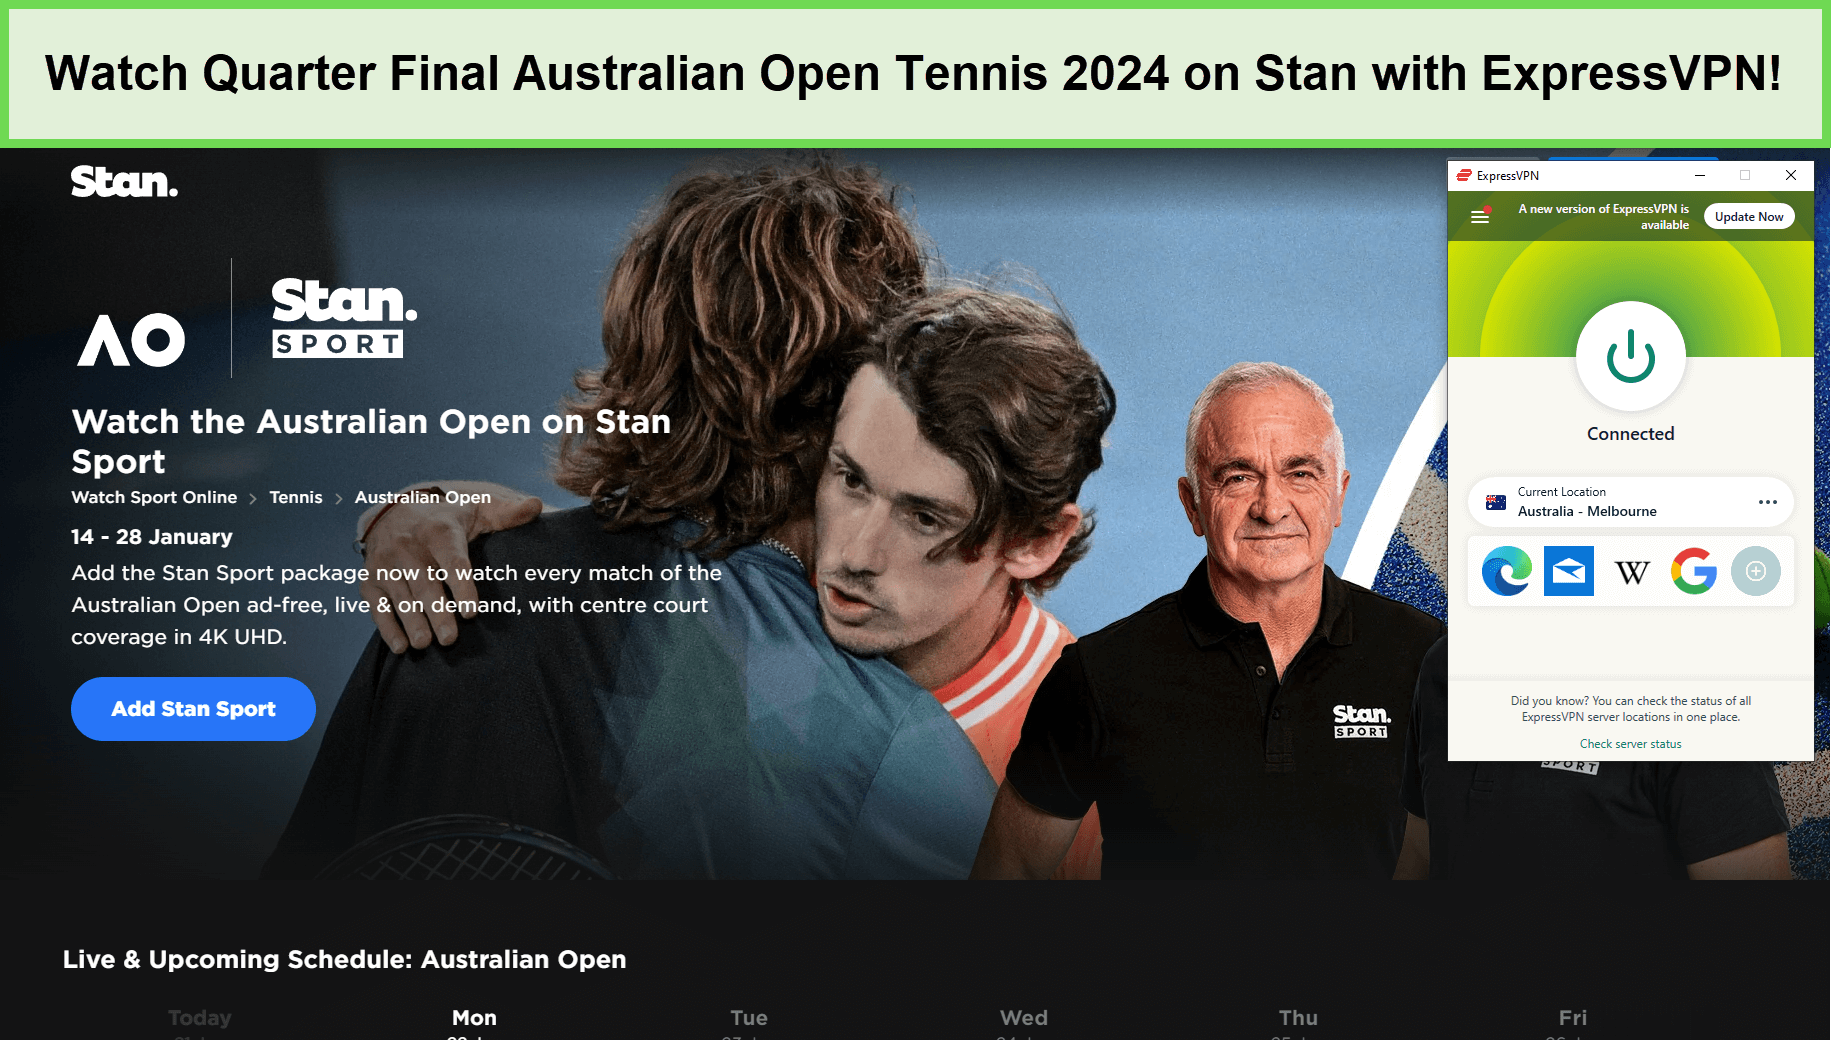 Watch-Quarter-Final-Australian-Open-Tennis-2024-in-USA-on-Stan-with-ExpressVPN